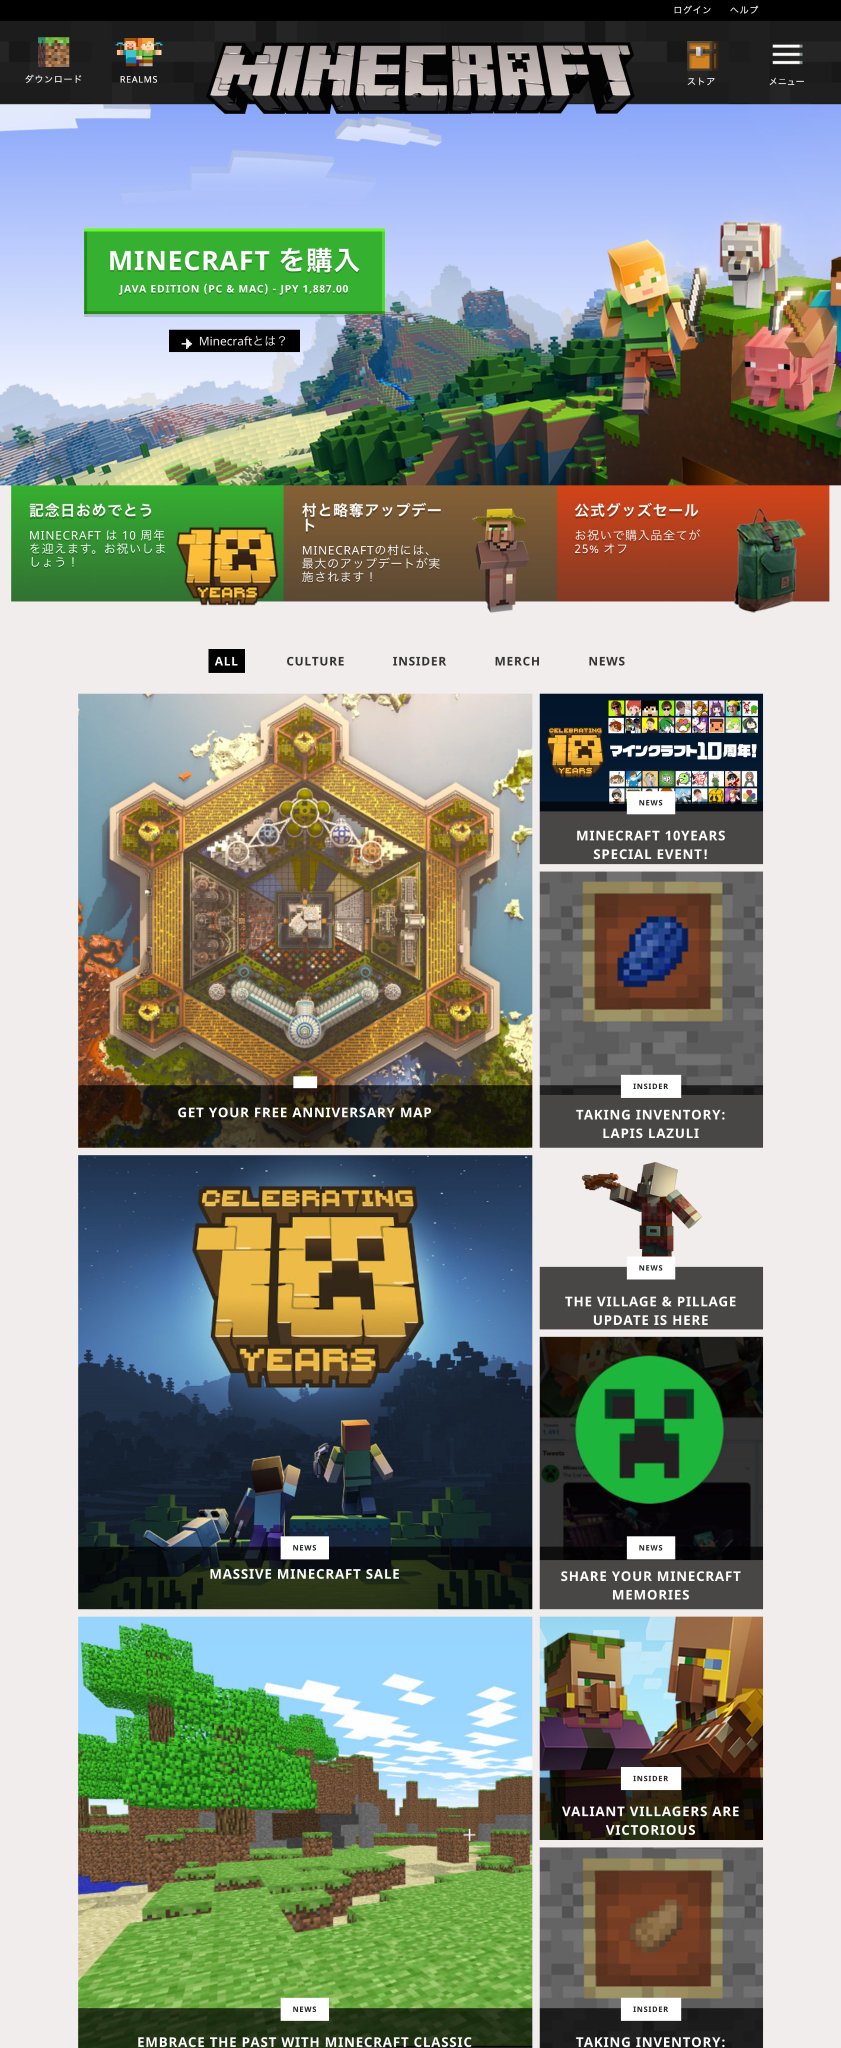 ほんとだ、Minecraft Java Edition が1887円になってる。

公式サイト | Minecraft https://t.co/TSebQHrdtI https://t.co/fdtHhAaC4M